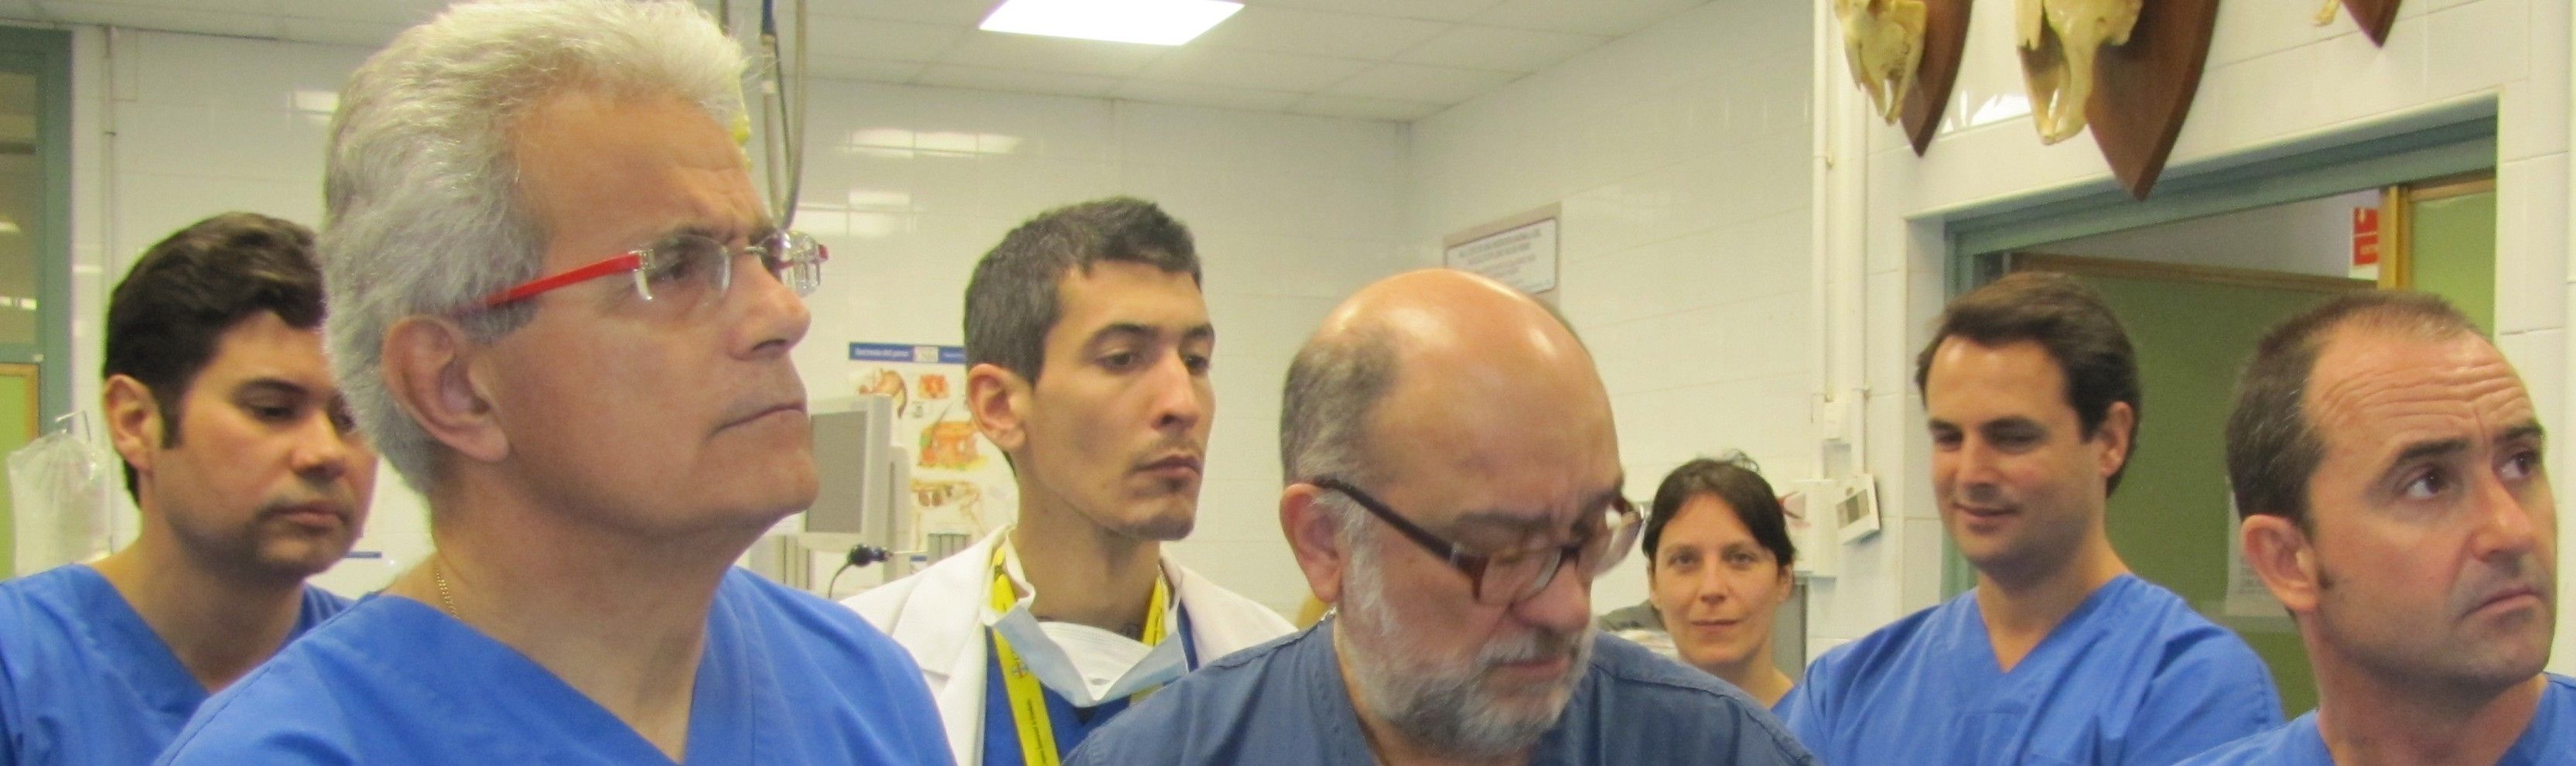 Los doctores Cugat y Tarragó, de la Fundación García Cugat, junto al doctor Carrillo durante una sesión formativa en el Hospital Clínico Veterinaria de la Universidad CEU Cardenal Herrera.